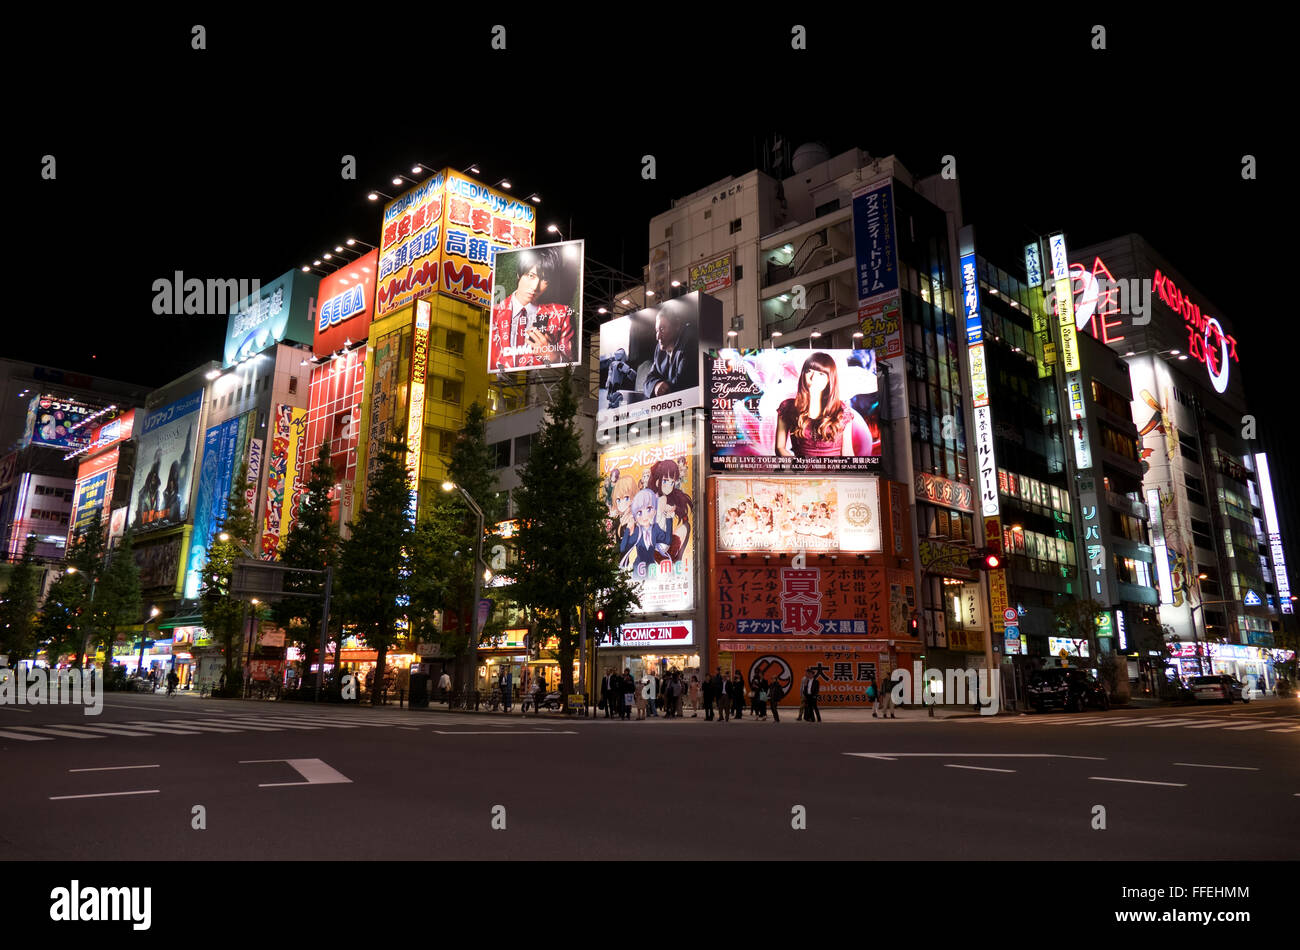 La regione di Akihabara, Tokyo, Giappone, Asia. Street, strada, edifici, luci al neon, segni, cartelloni di notte, people shopping Foto Stock